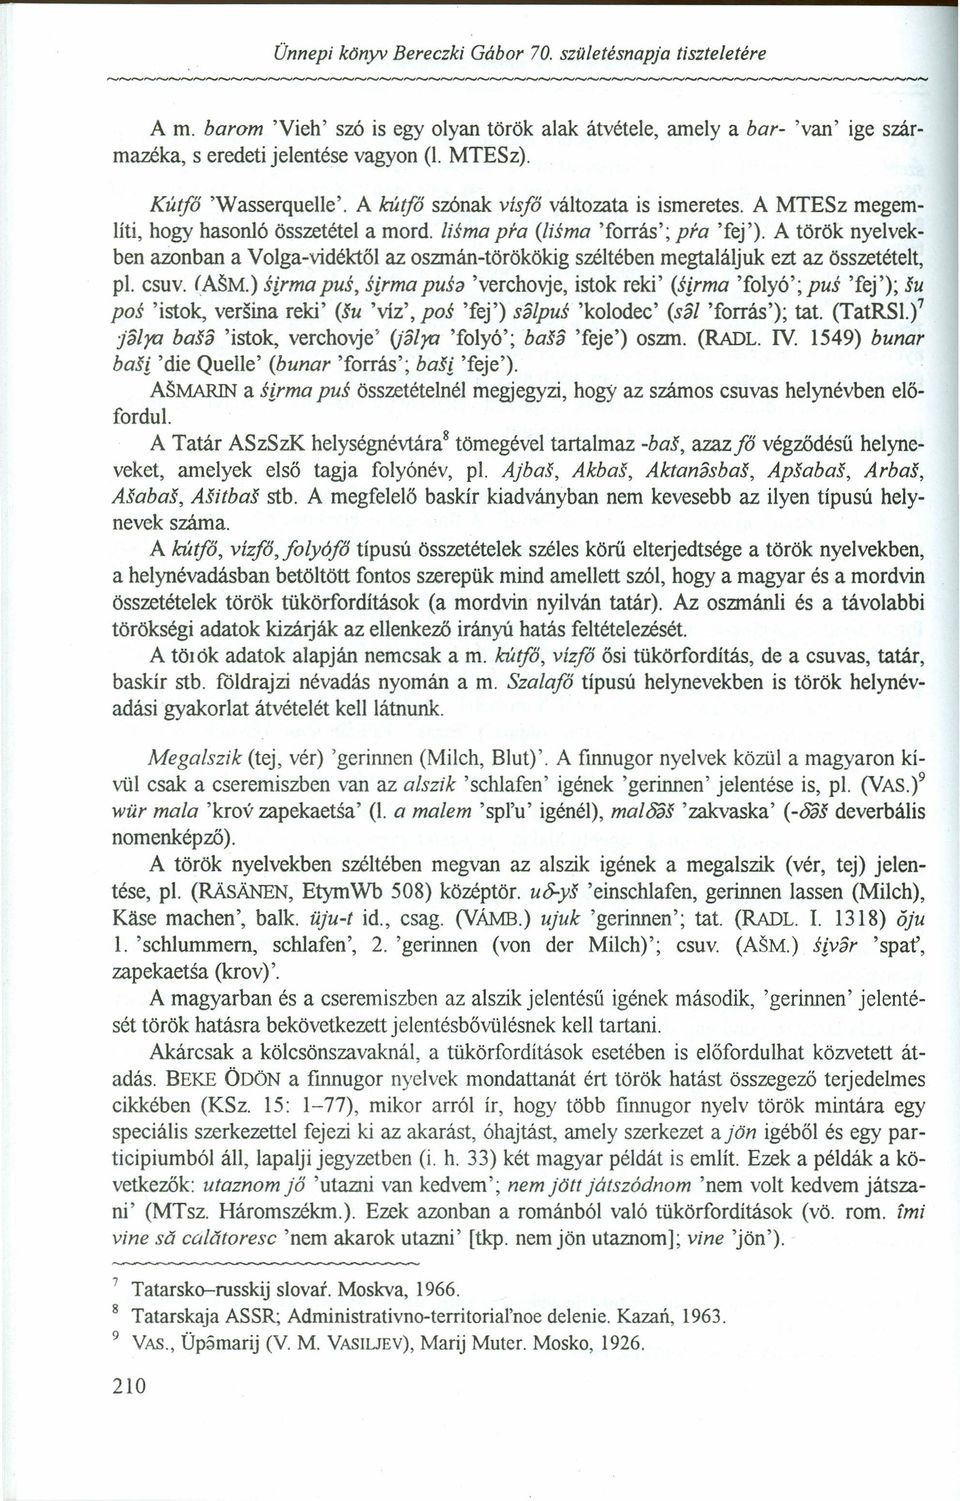 A török nyelvekben azonban a Volga-vidéktől az oszmán-törökökig széltében megtaláljuk ezt az összetételt, pi. csuv. (ASM.